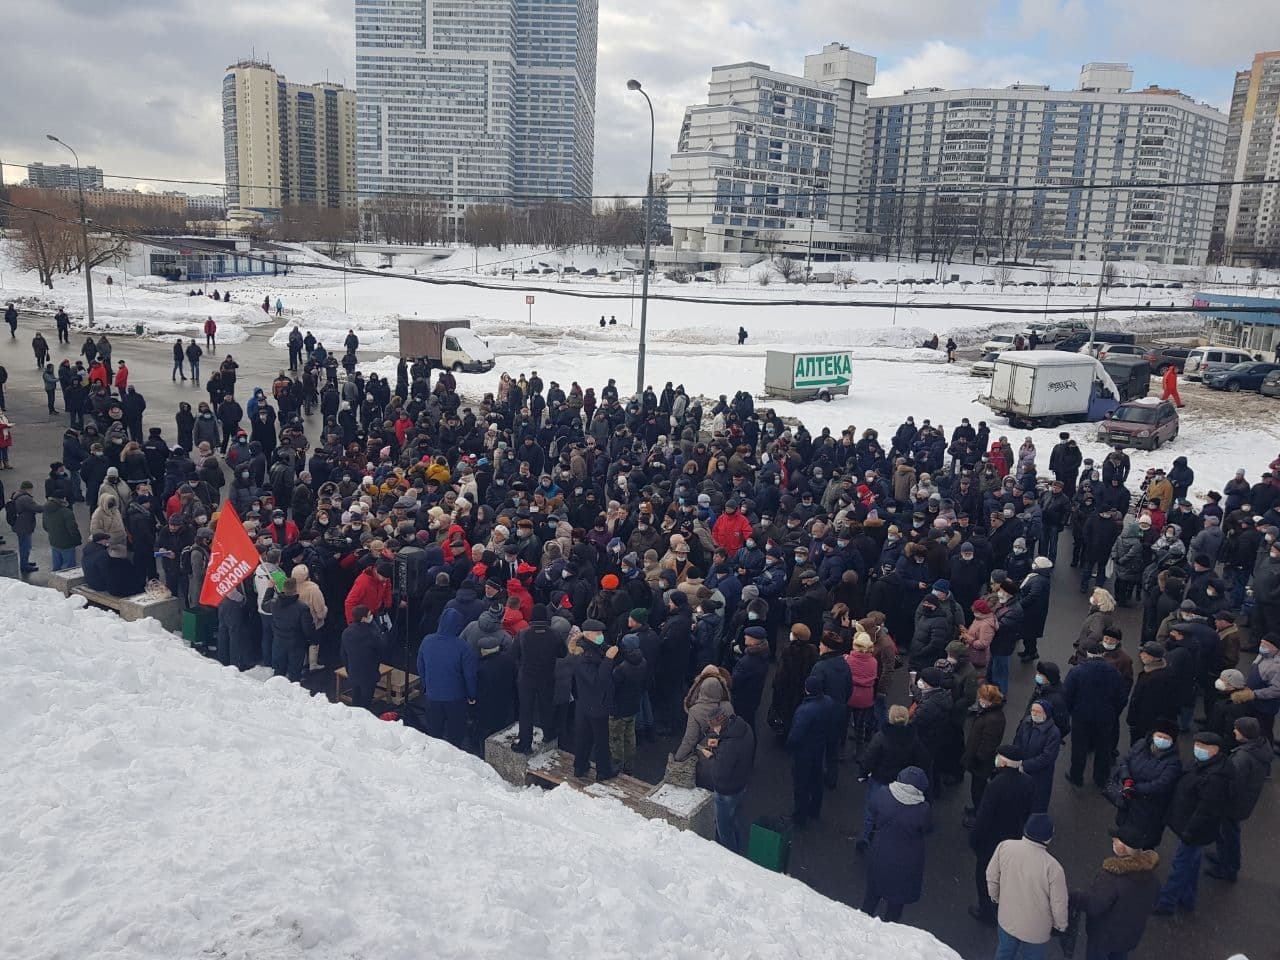 Москвичи провели в районе Чертаново массовую встречу против сноса гаражей и в защиту Битцевского леса от варварского «благоустройства». Задержаны несколько человек